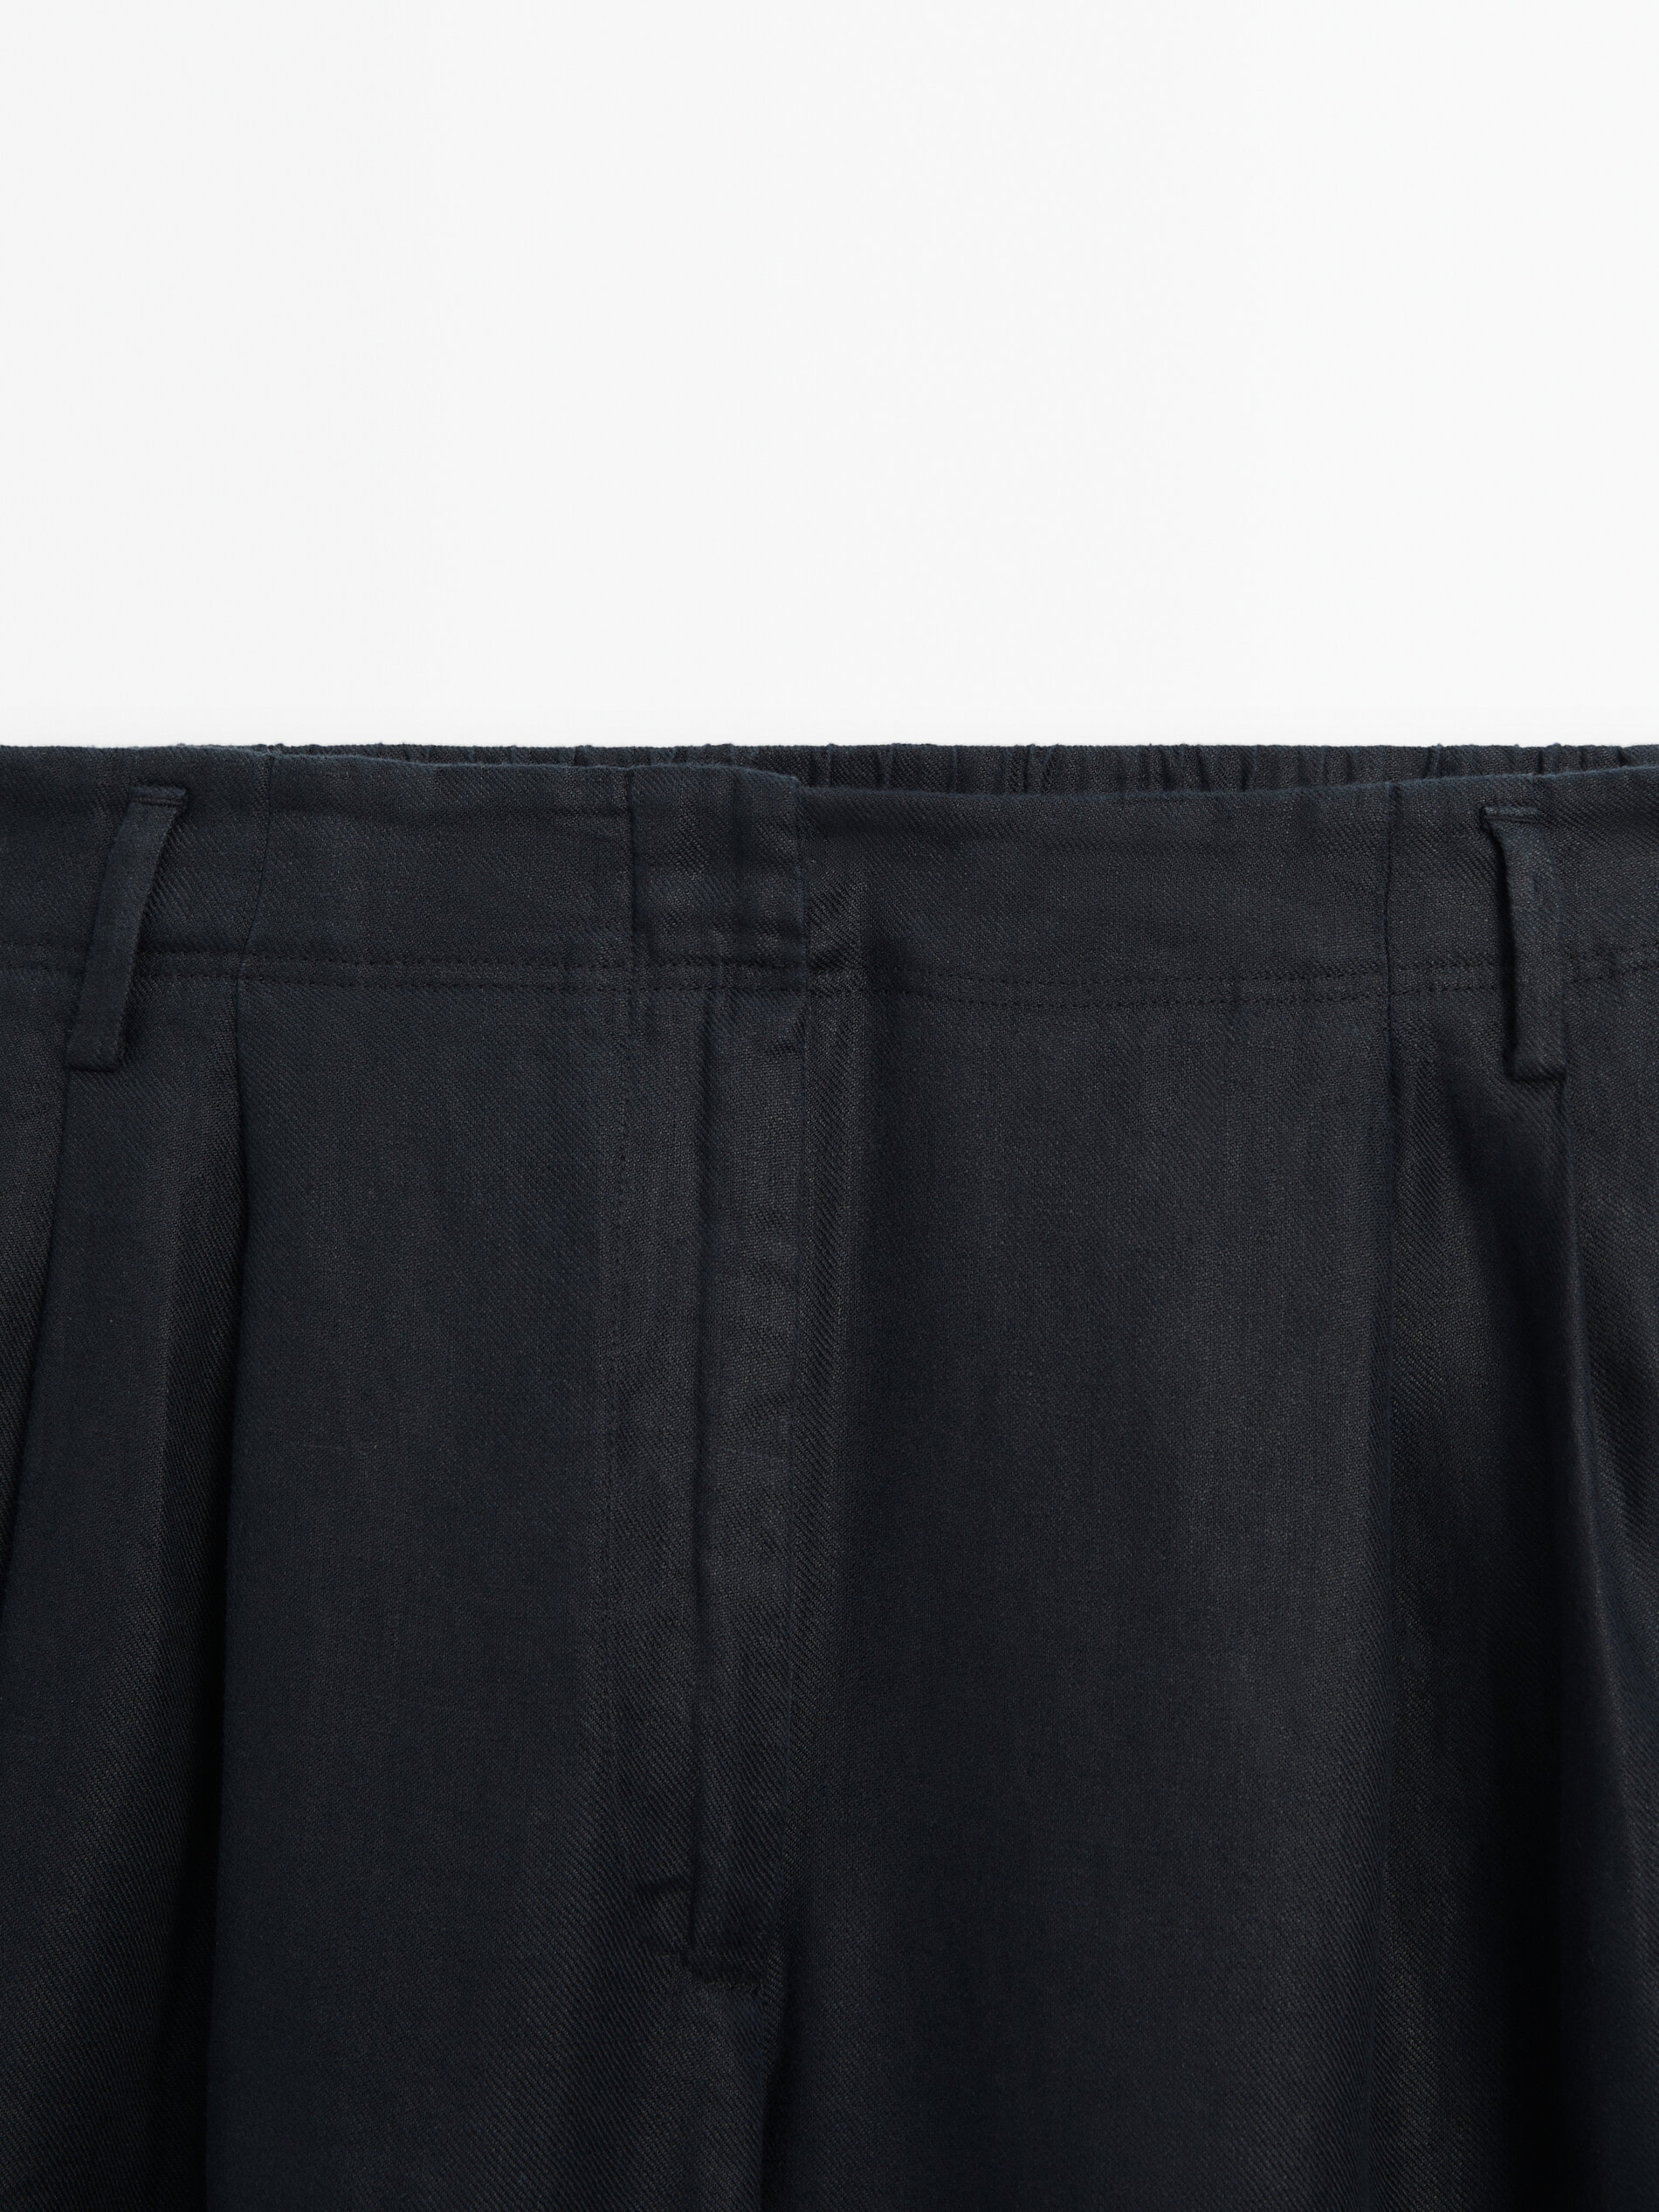 Pantalón doble pinza 100% lino